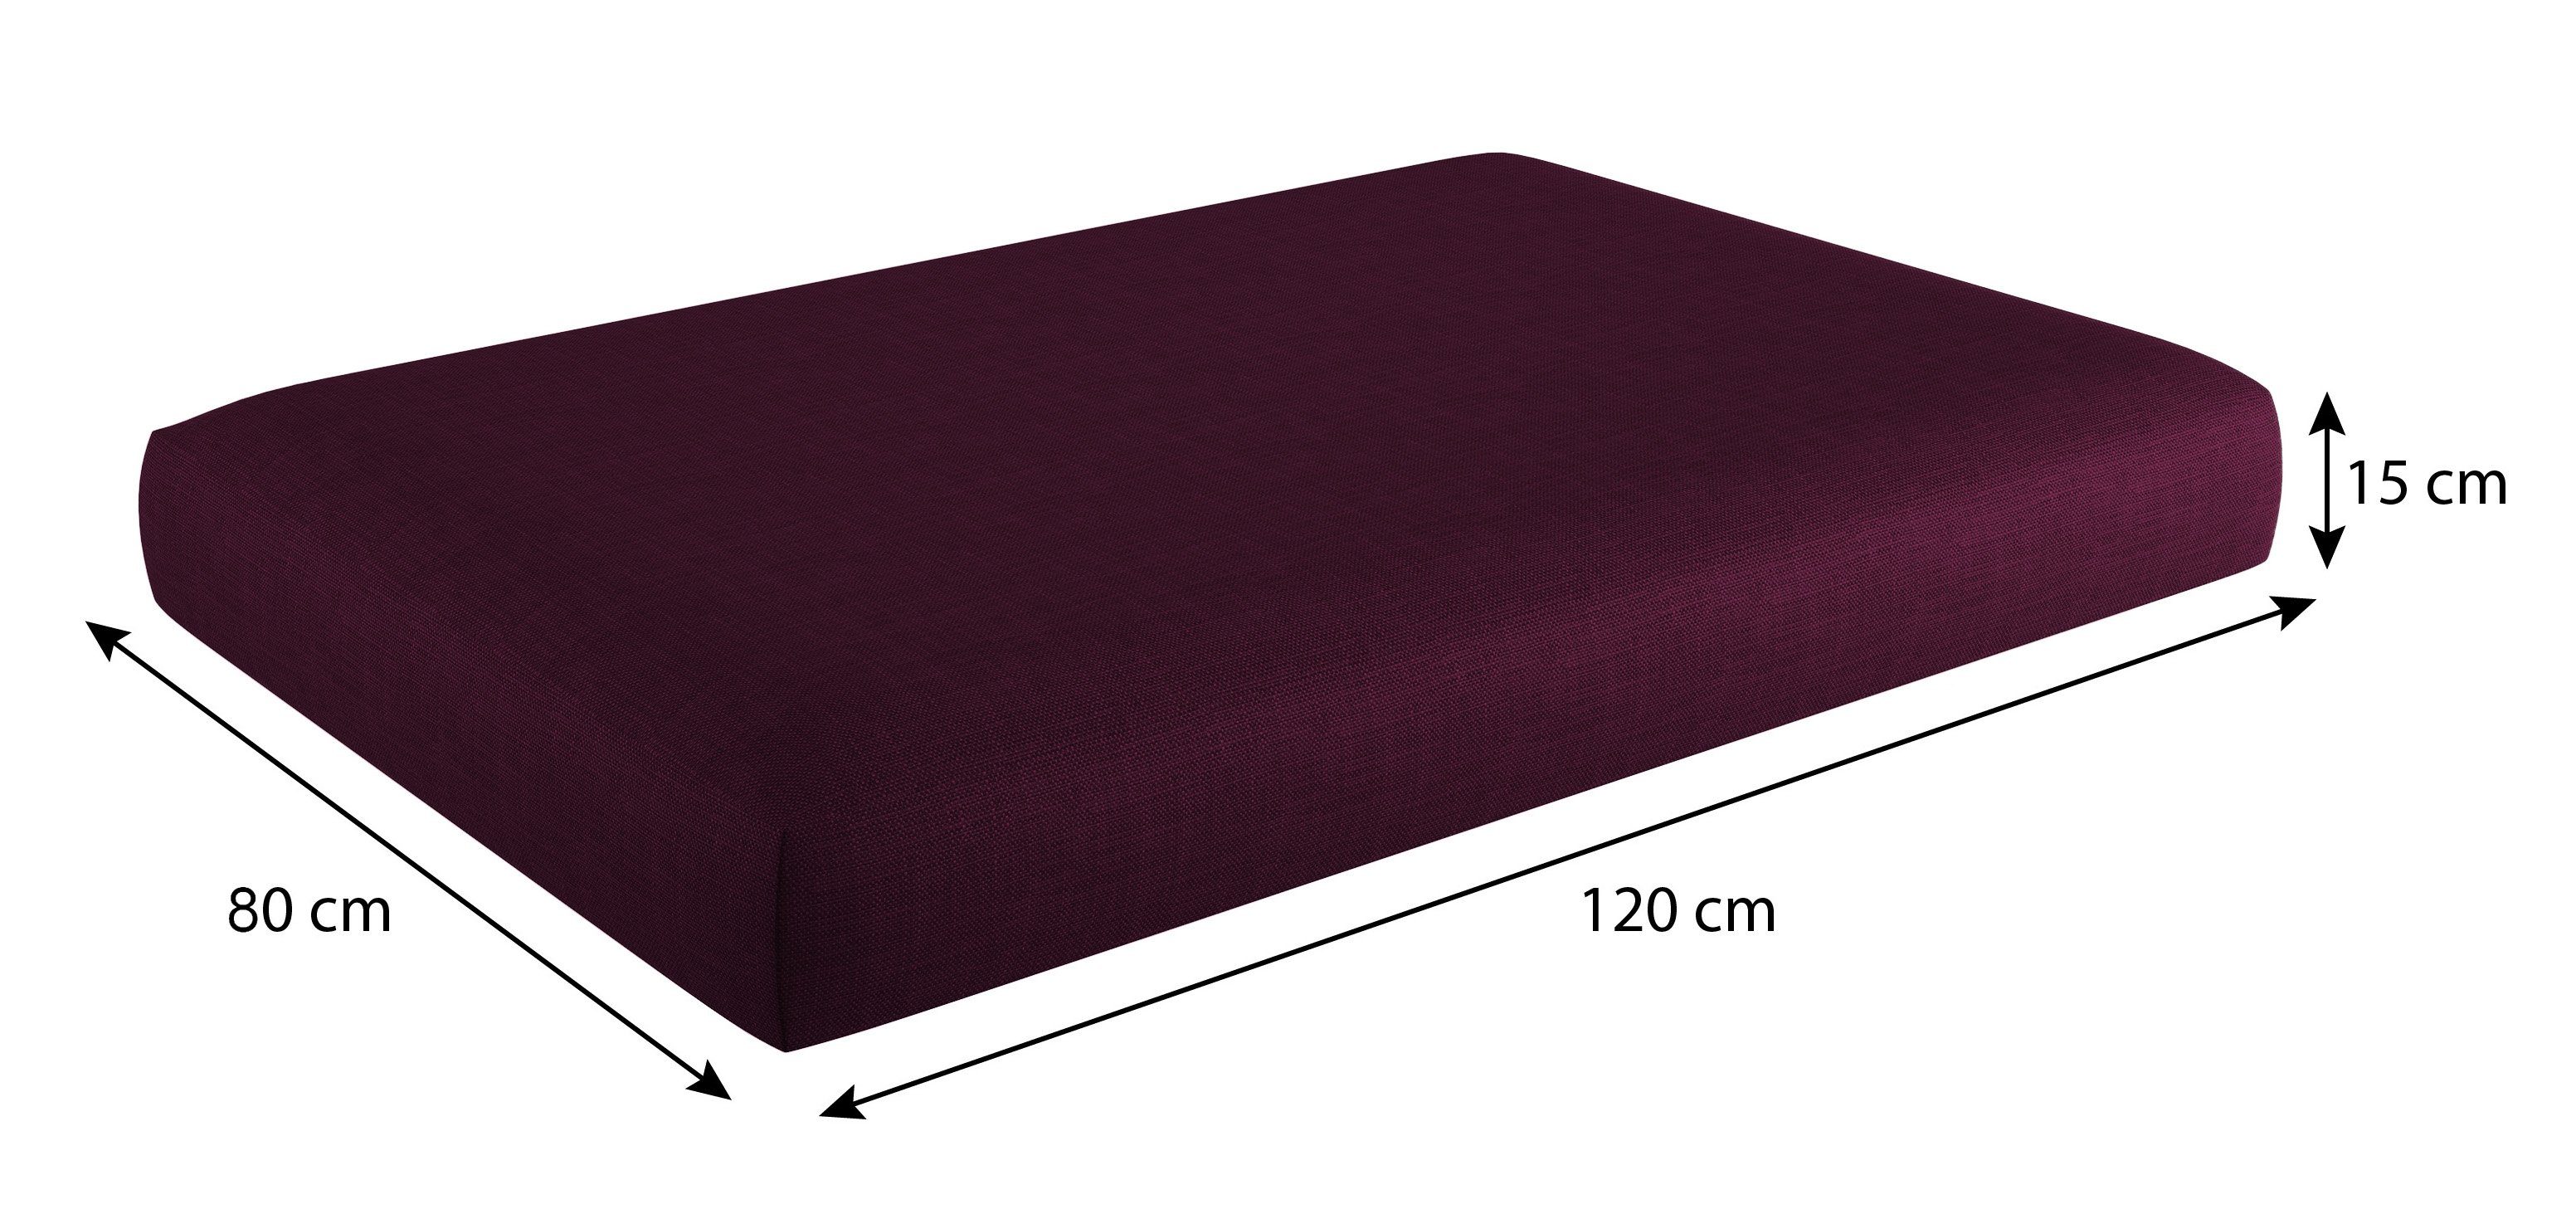 Bezug Sitzkissen Violett Sitzkissen 120x80x15cm, abnehmbarem sunnypillow mit Palettenkissen